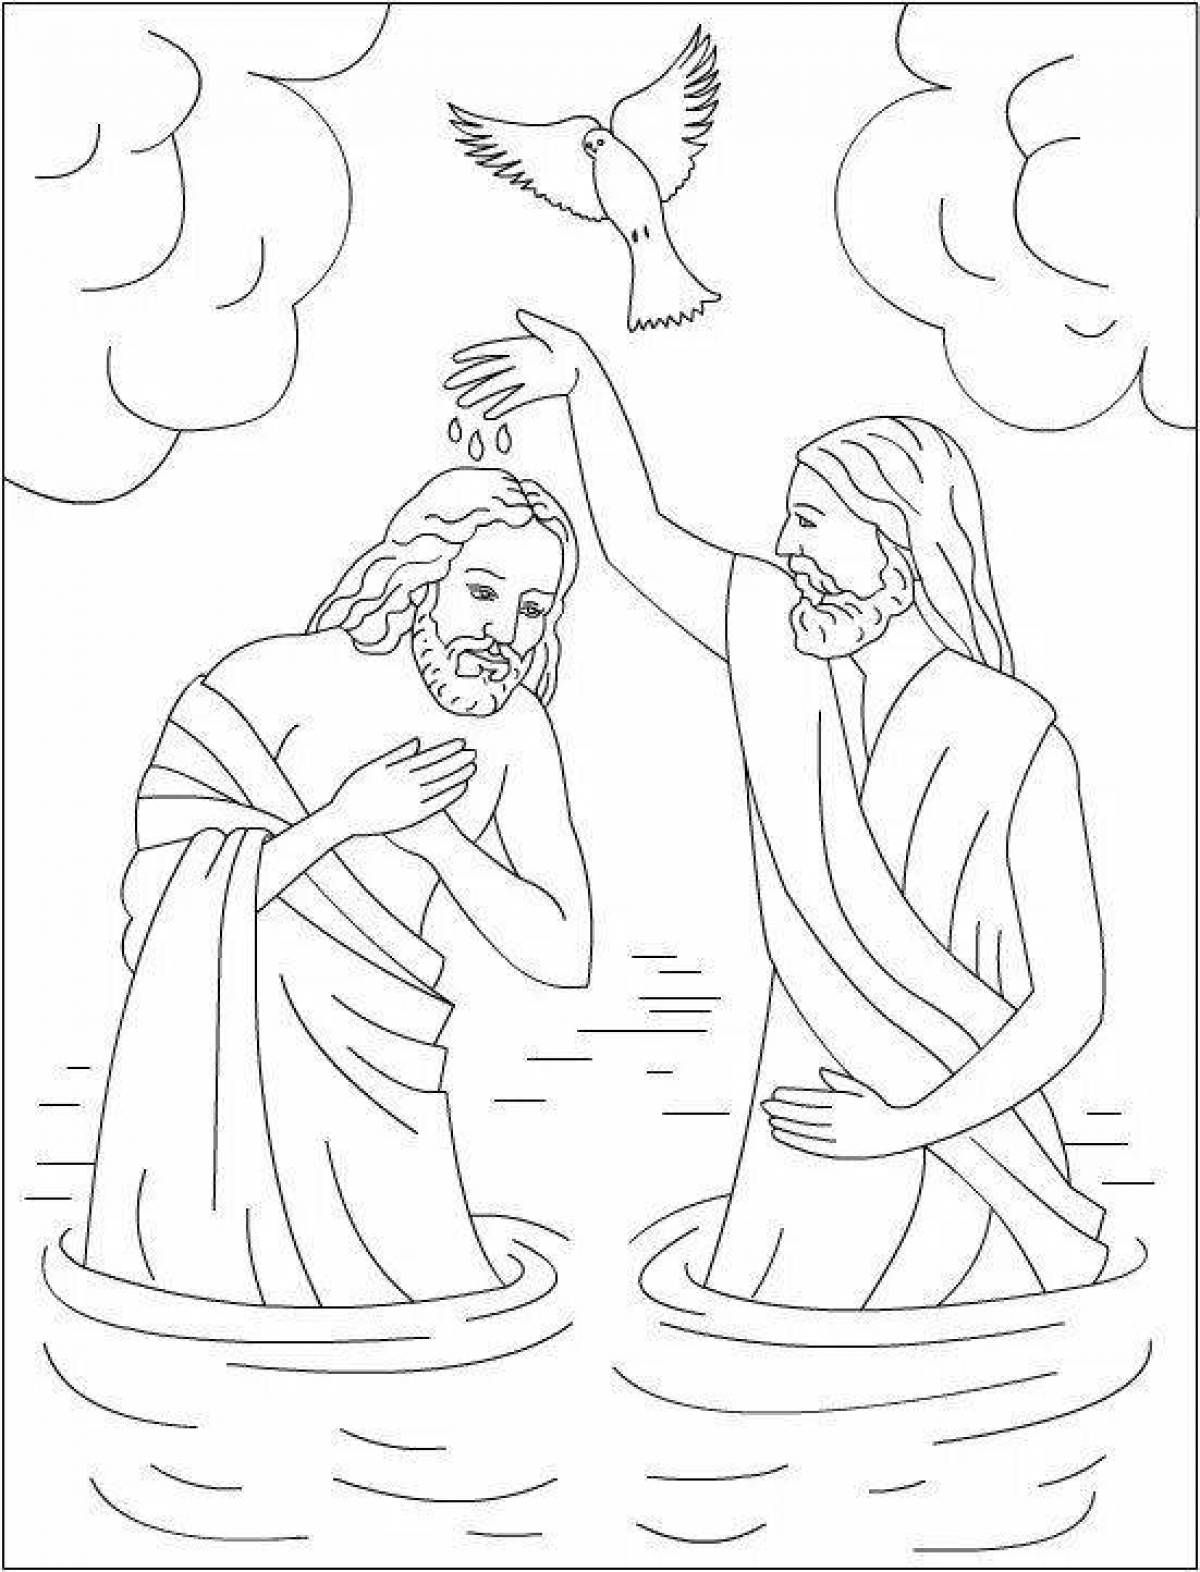 Элегантная раскраска крещение господне православное